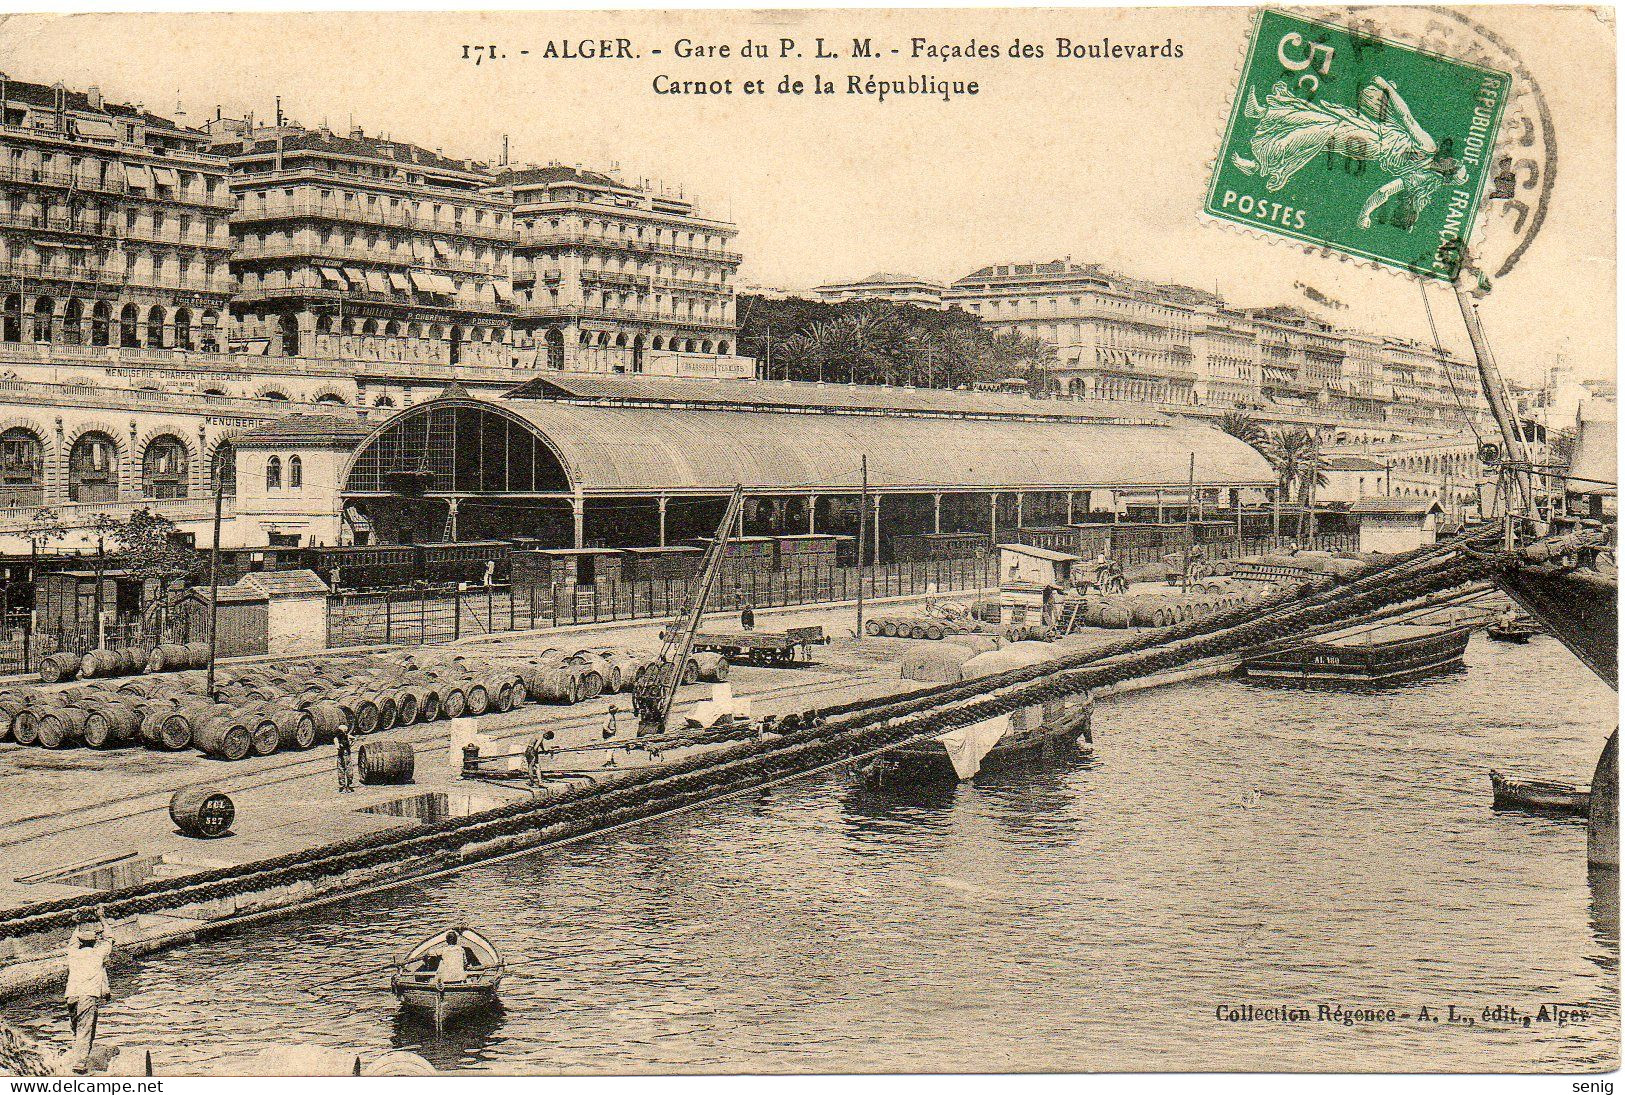 ALGERIE - ALGER - 171 - Gare PLM Façades Carnot République - Collection Régence A. L. édit. Alger (Leroux) - - Algiers